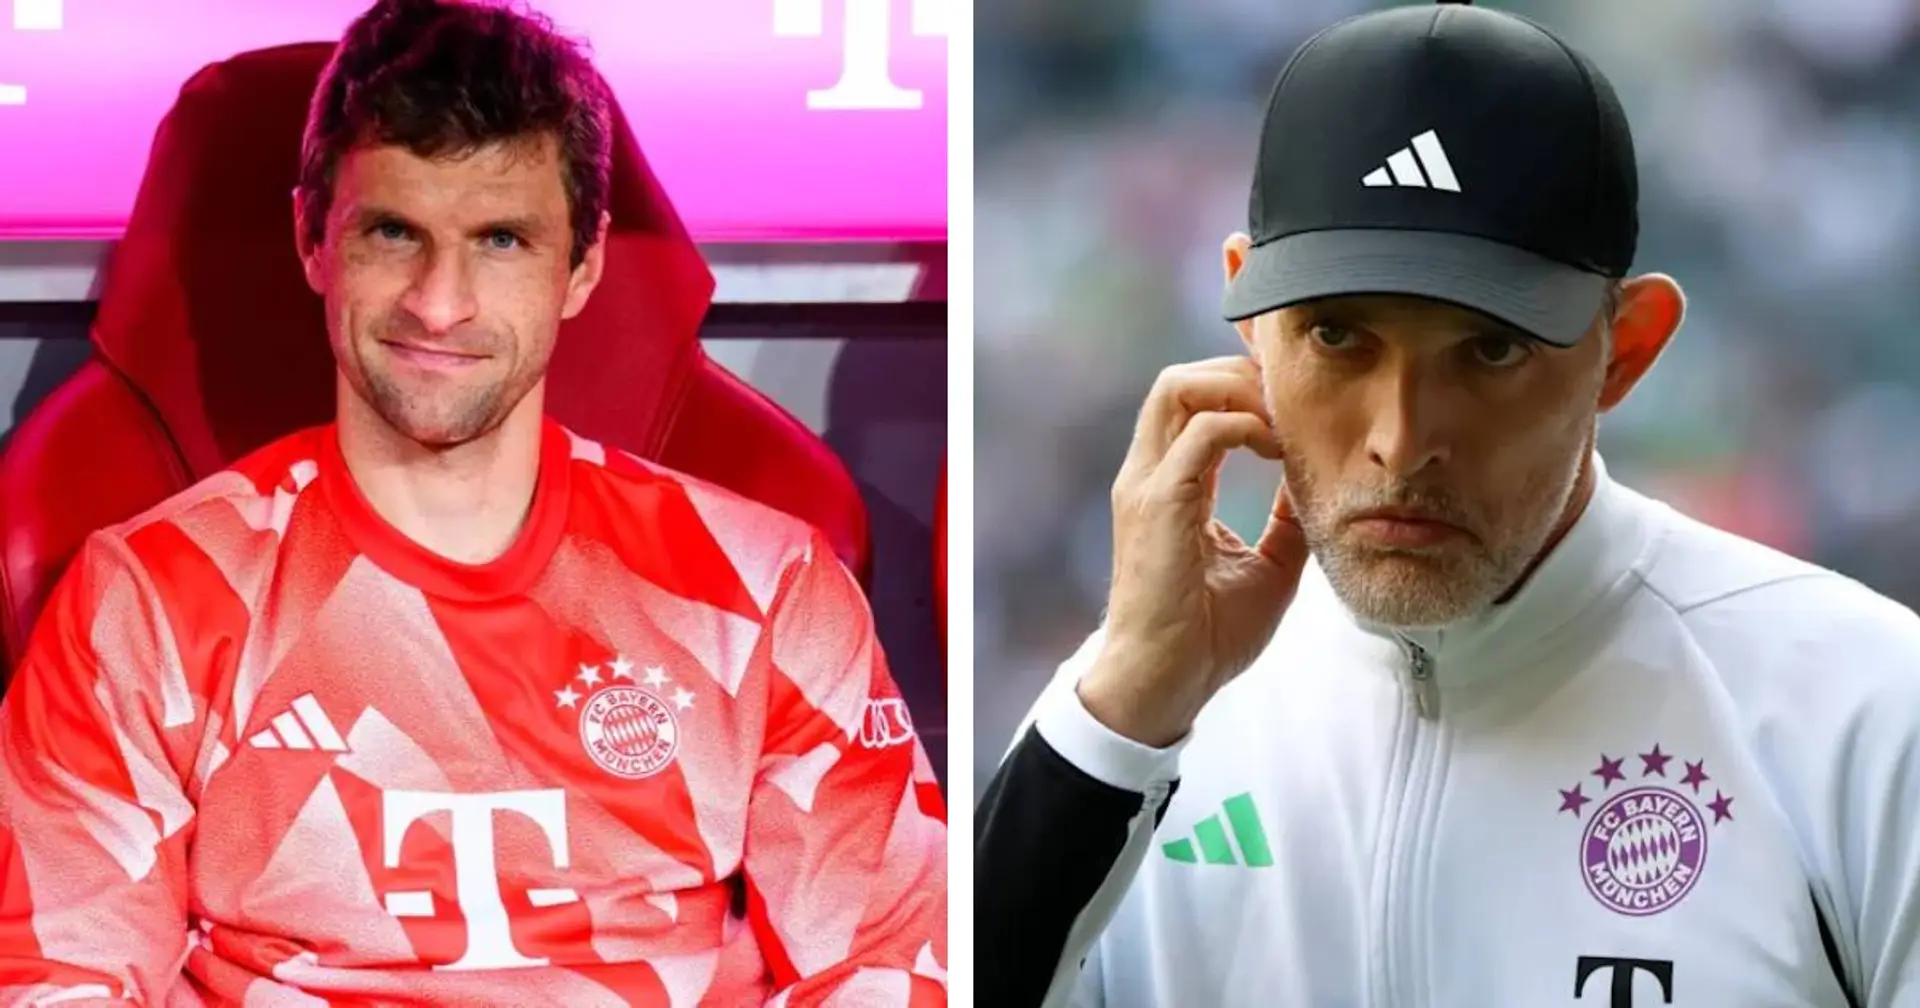 Tuchel über begrenzte Spielpraxis von Müller: "Wir mögen beide die Situation nicht, das ist klar"